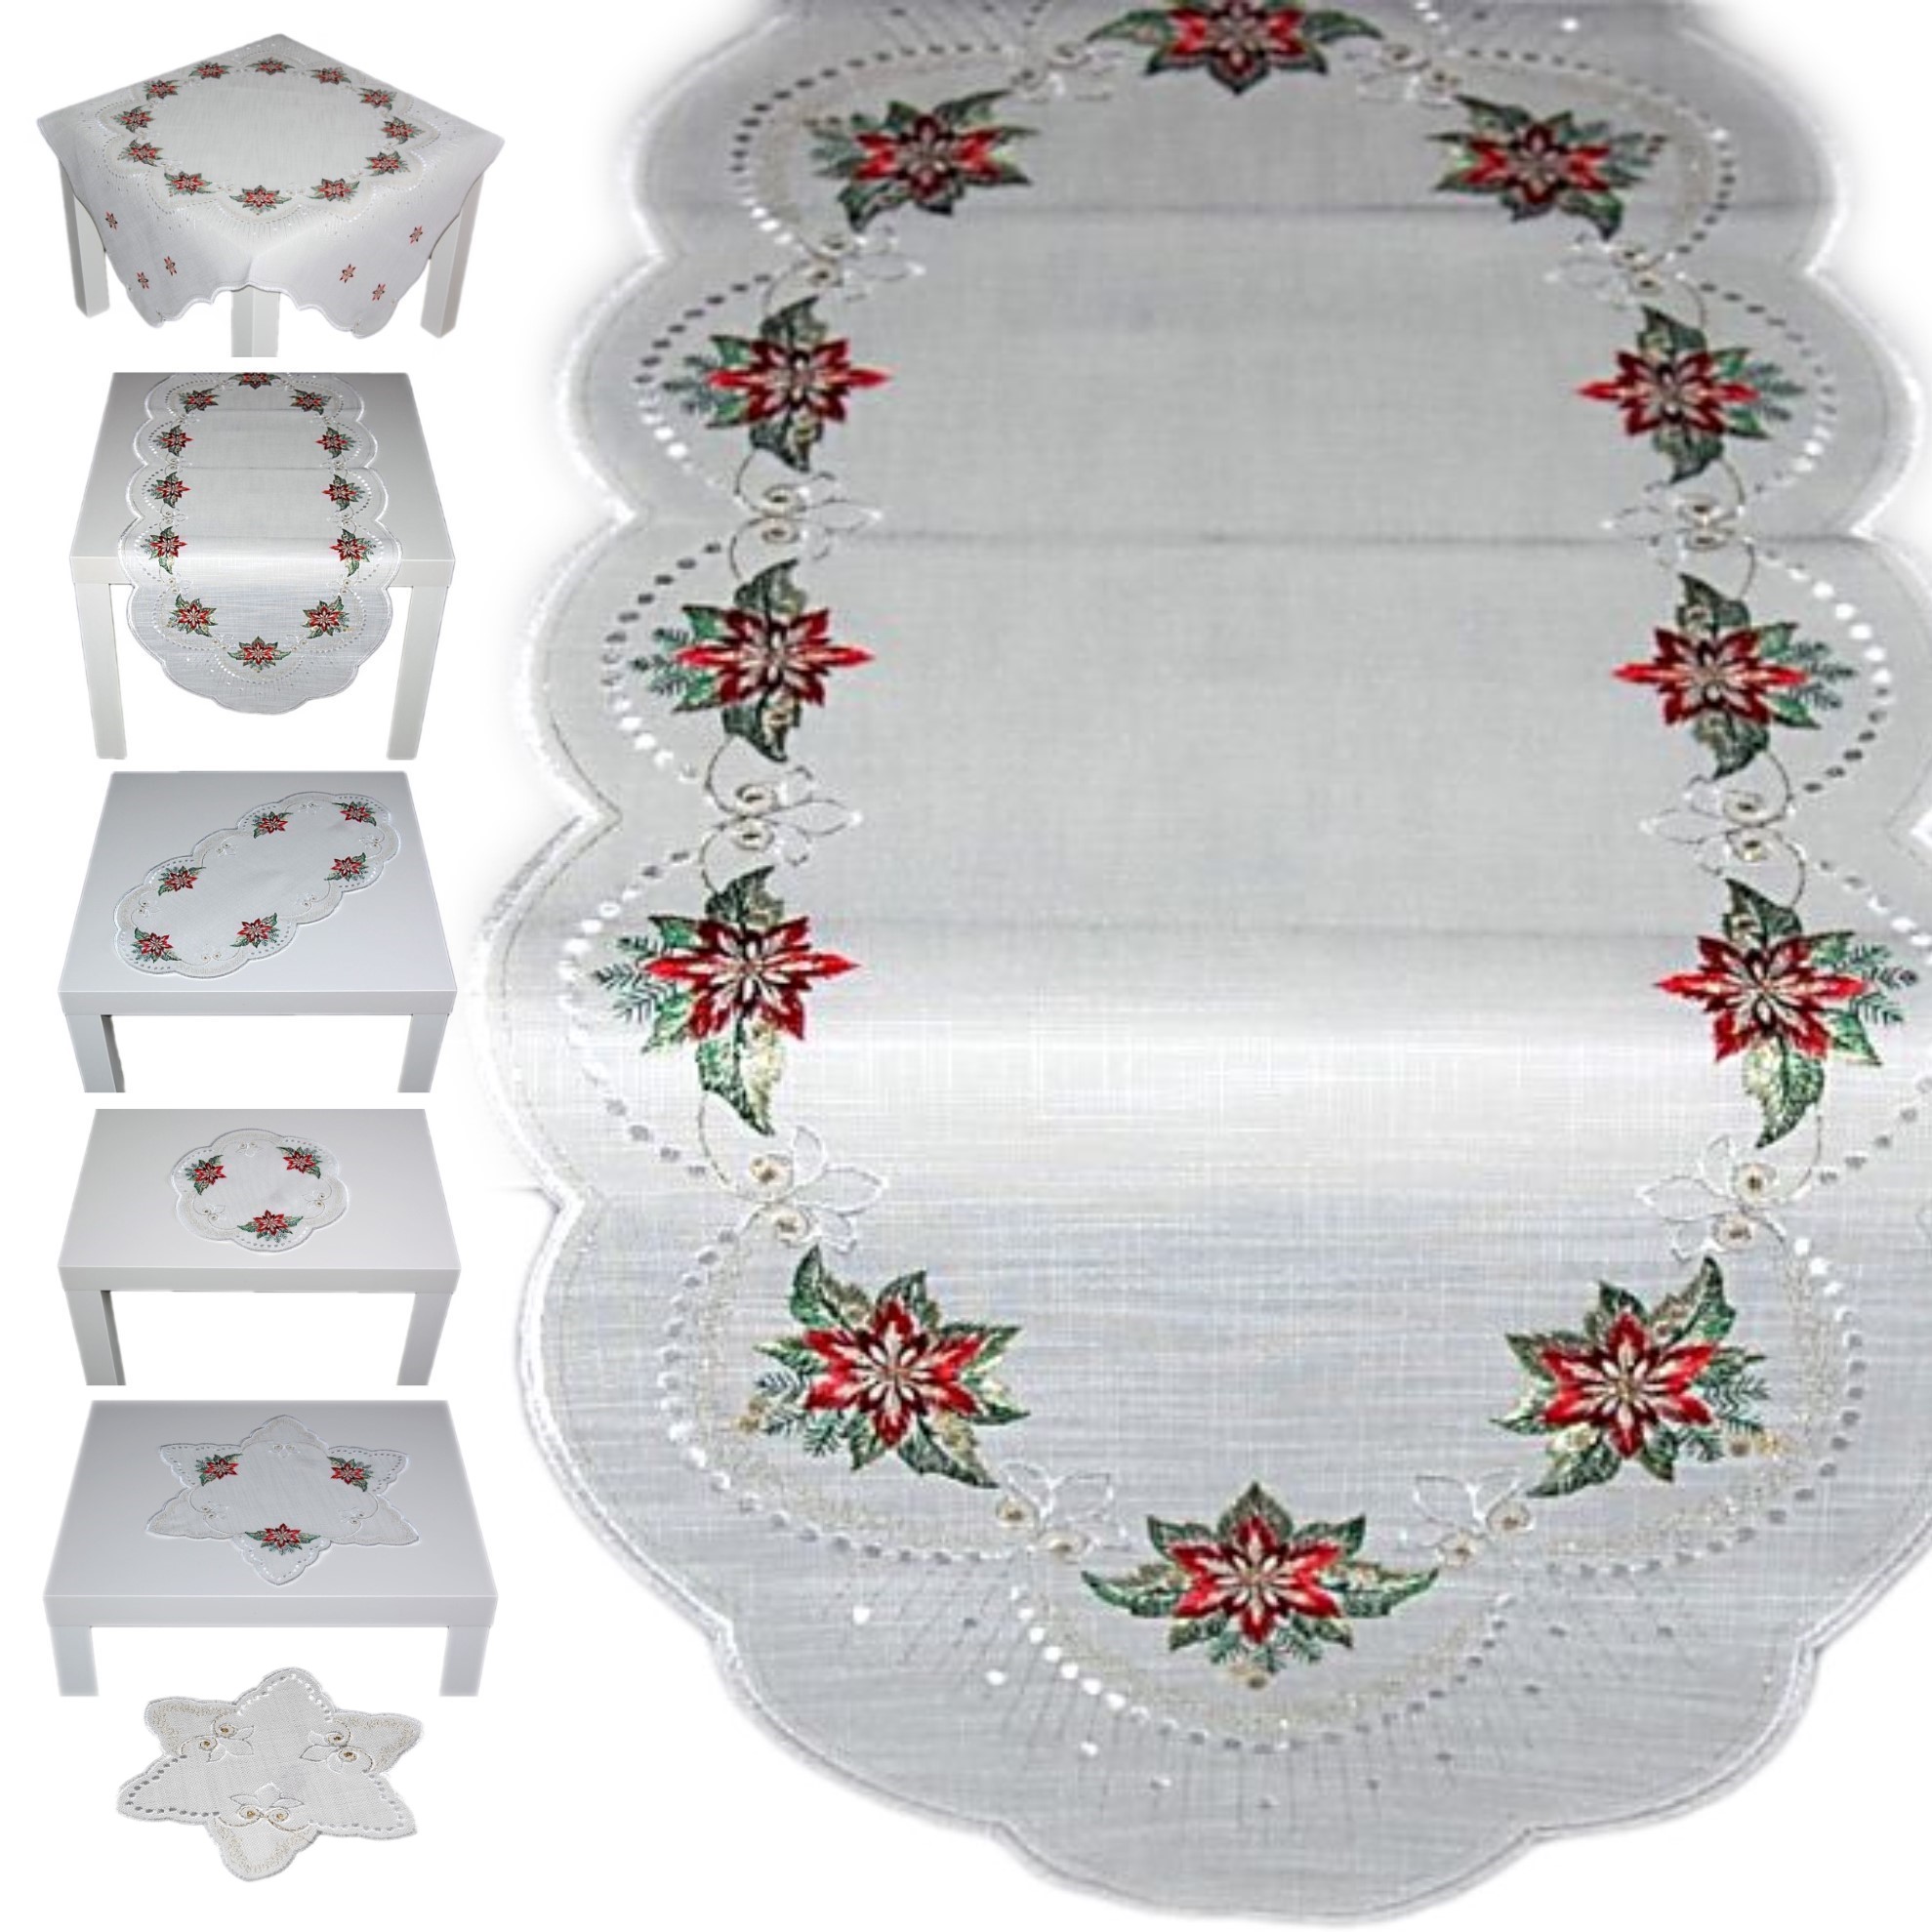 Plauener Spitze Tischdecke Stickerei Schneemann Deckchen Tischläufer Weiß  Winter | eBay